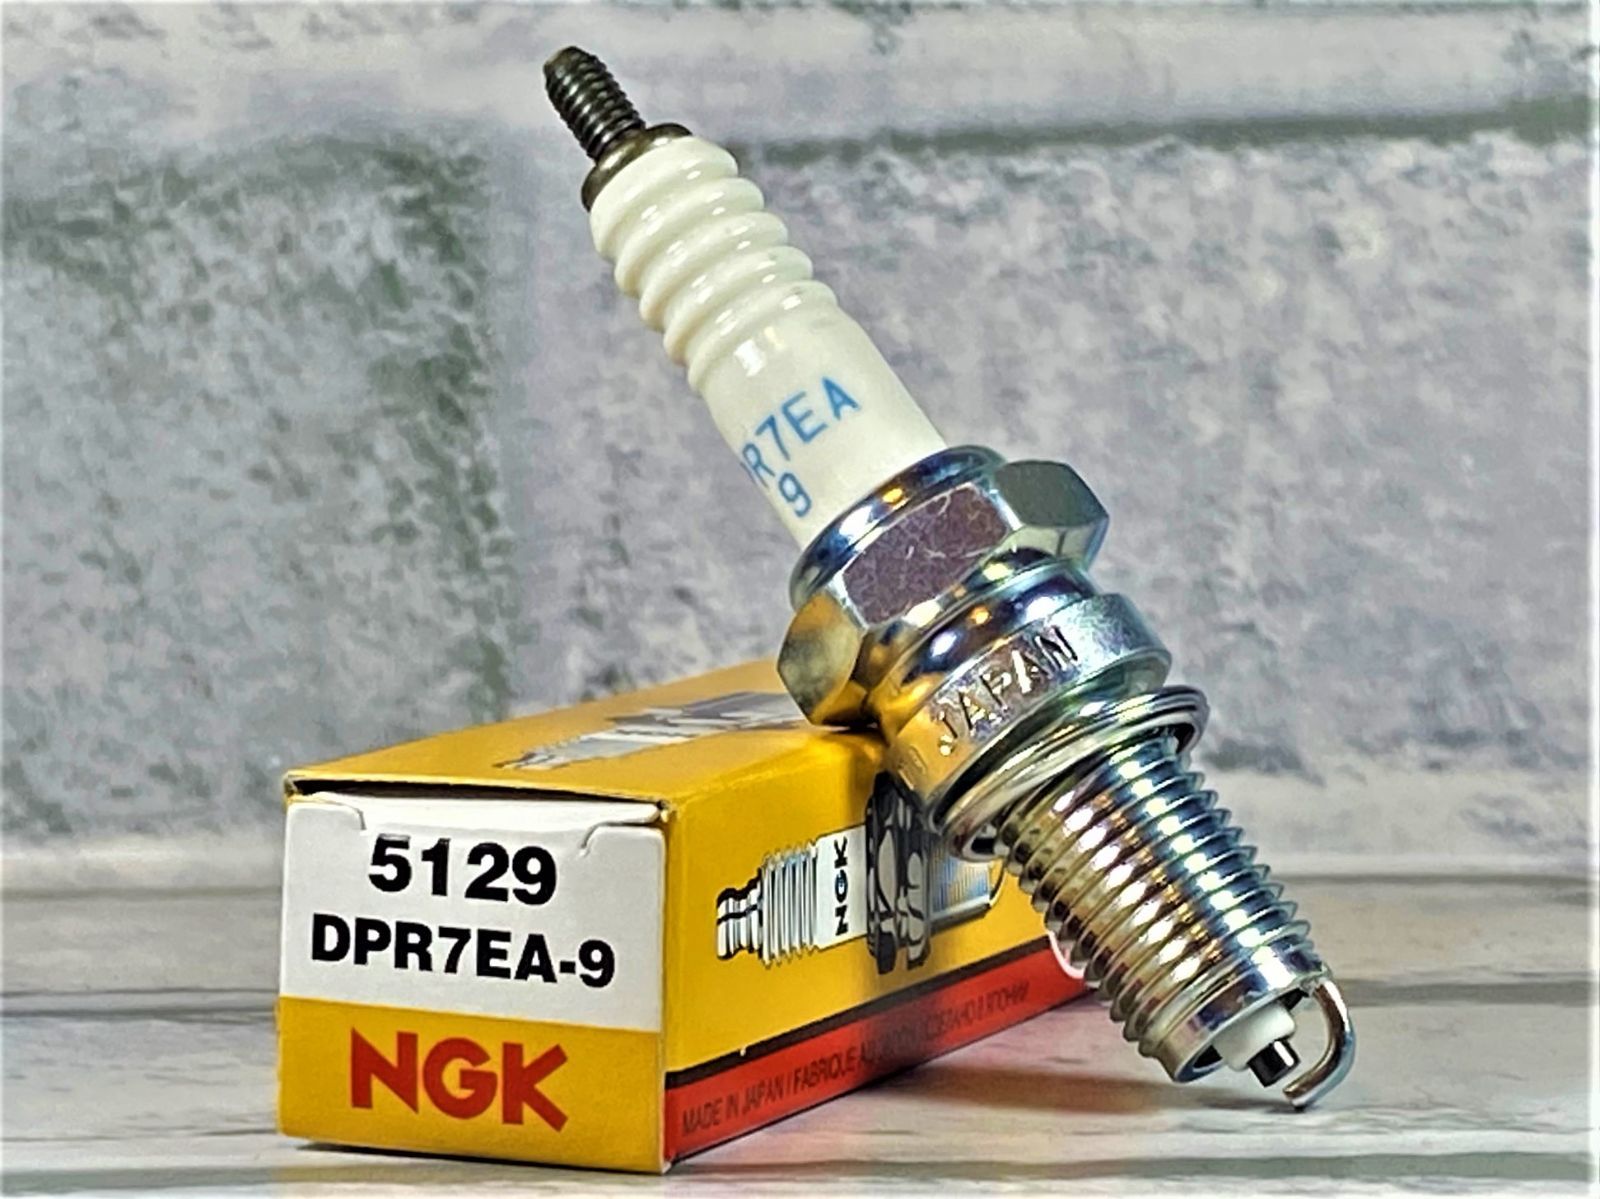 レビュー高評価のおせち贈り物 NGKスパークプラグ DPR7EA-9 ネジ形 5129